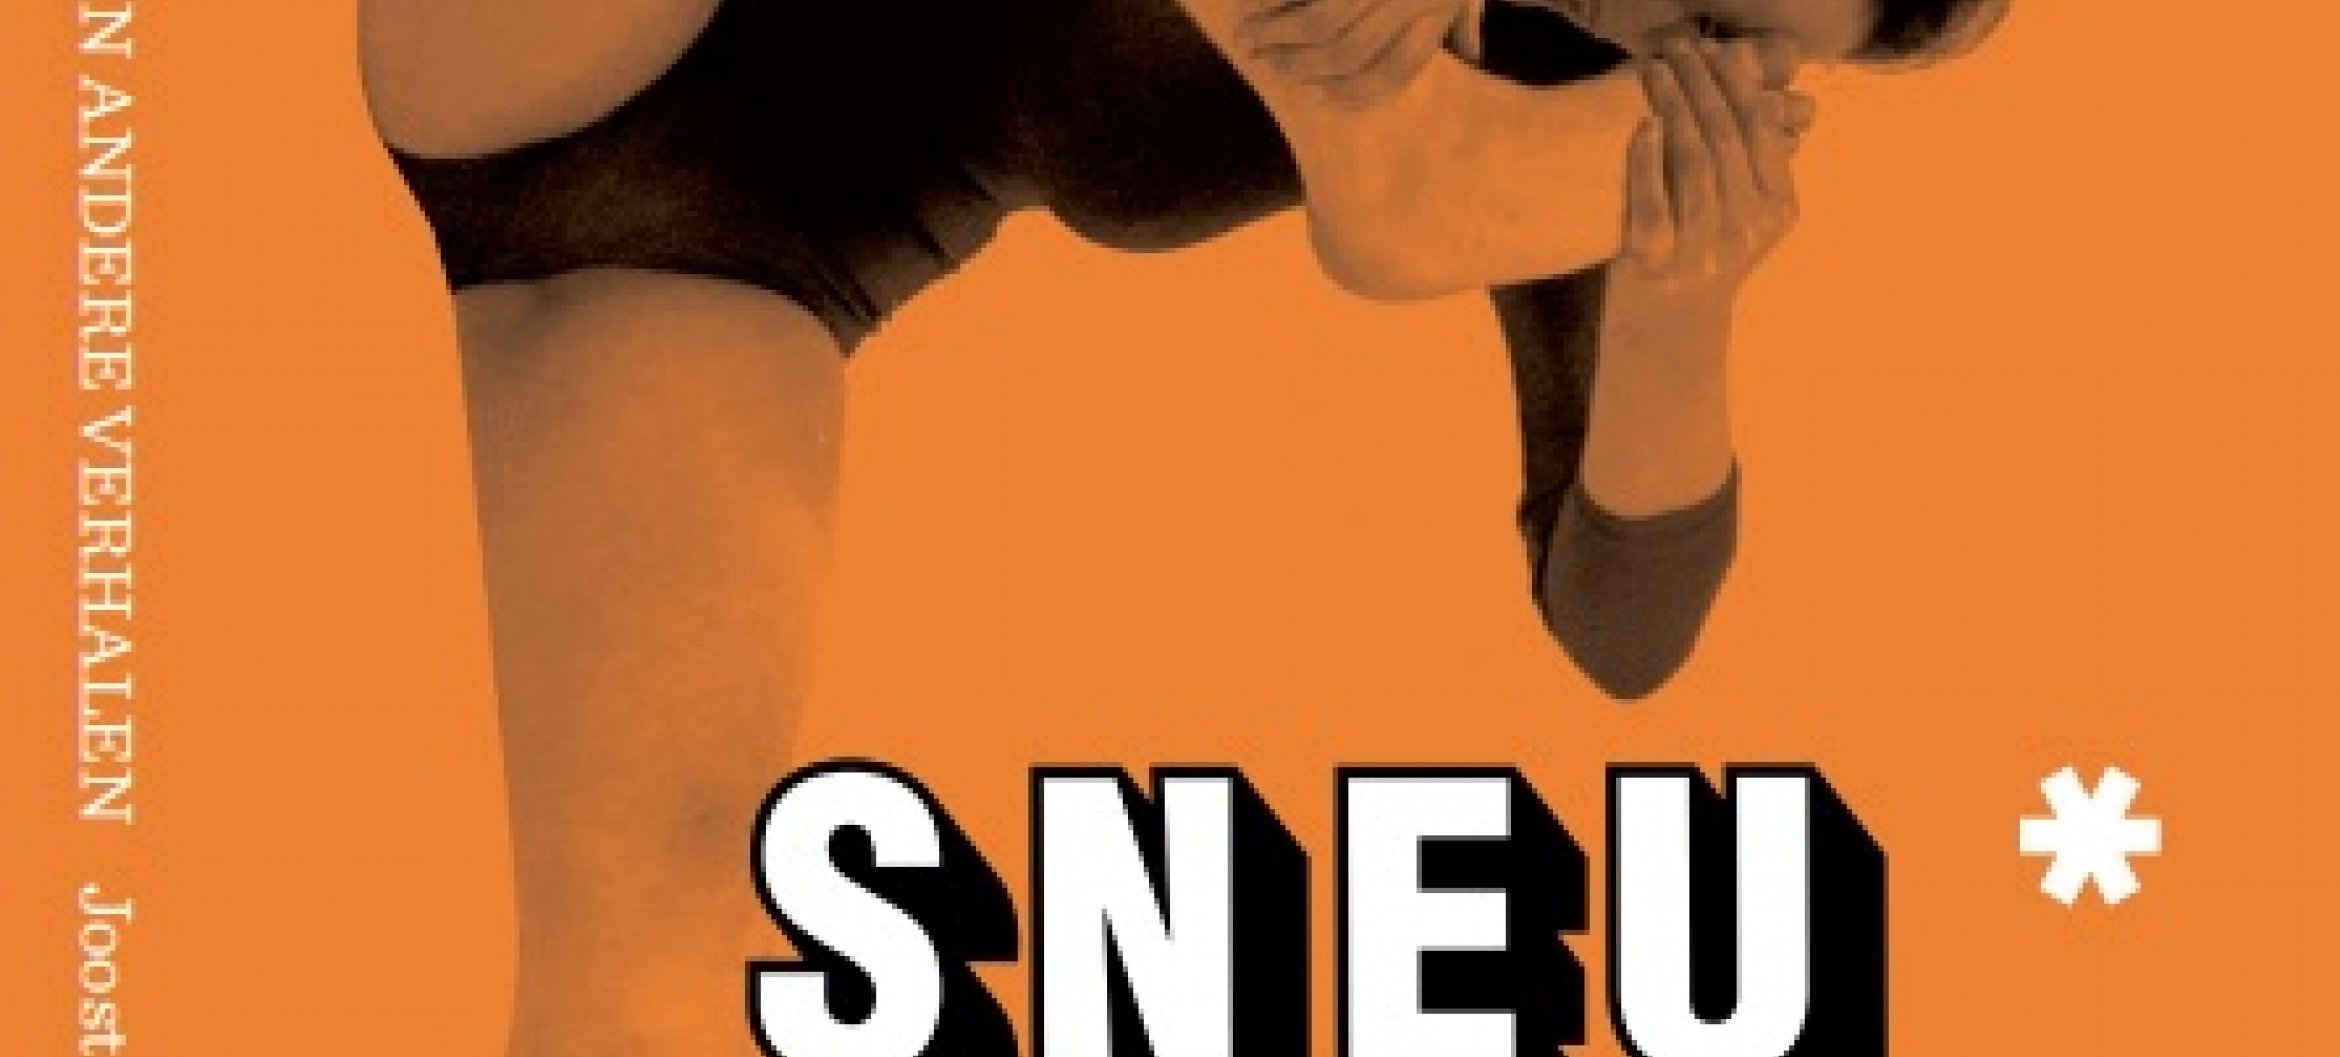 Sneu, de nieuwe uitgave Sneu van ArtEZ Press in de ArtEZ Alumni reeks